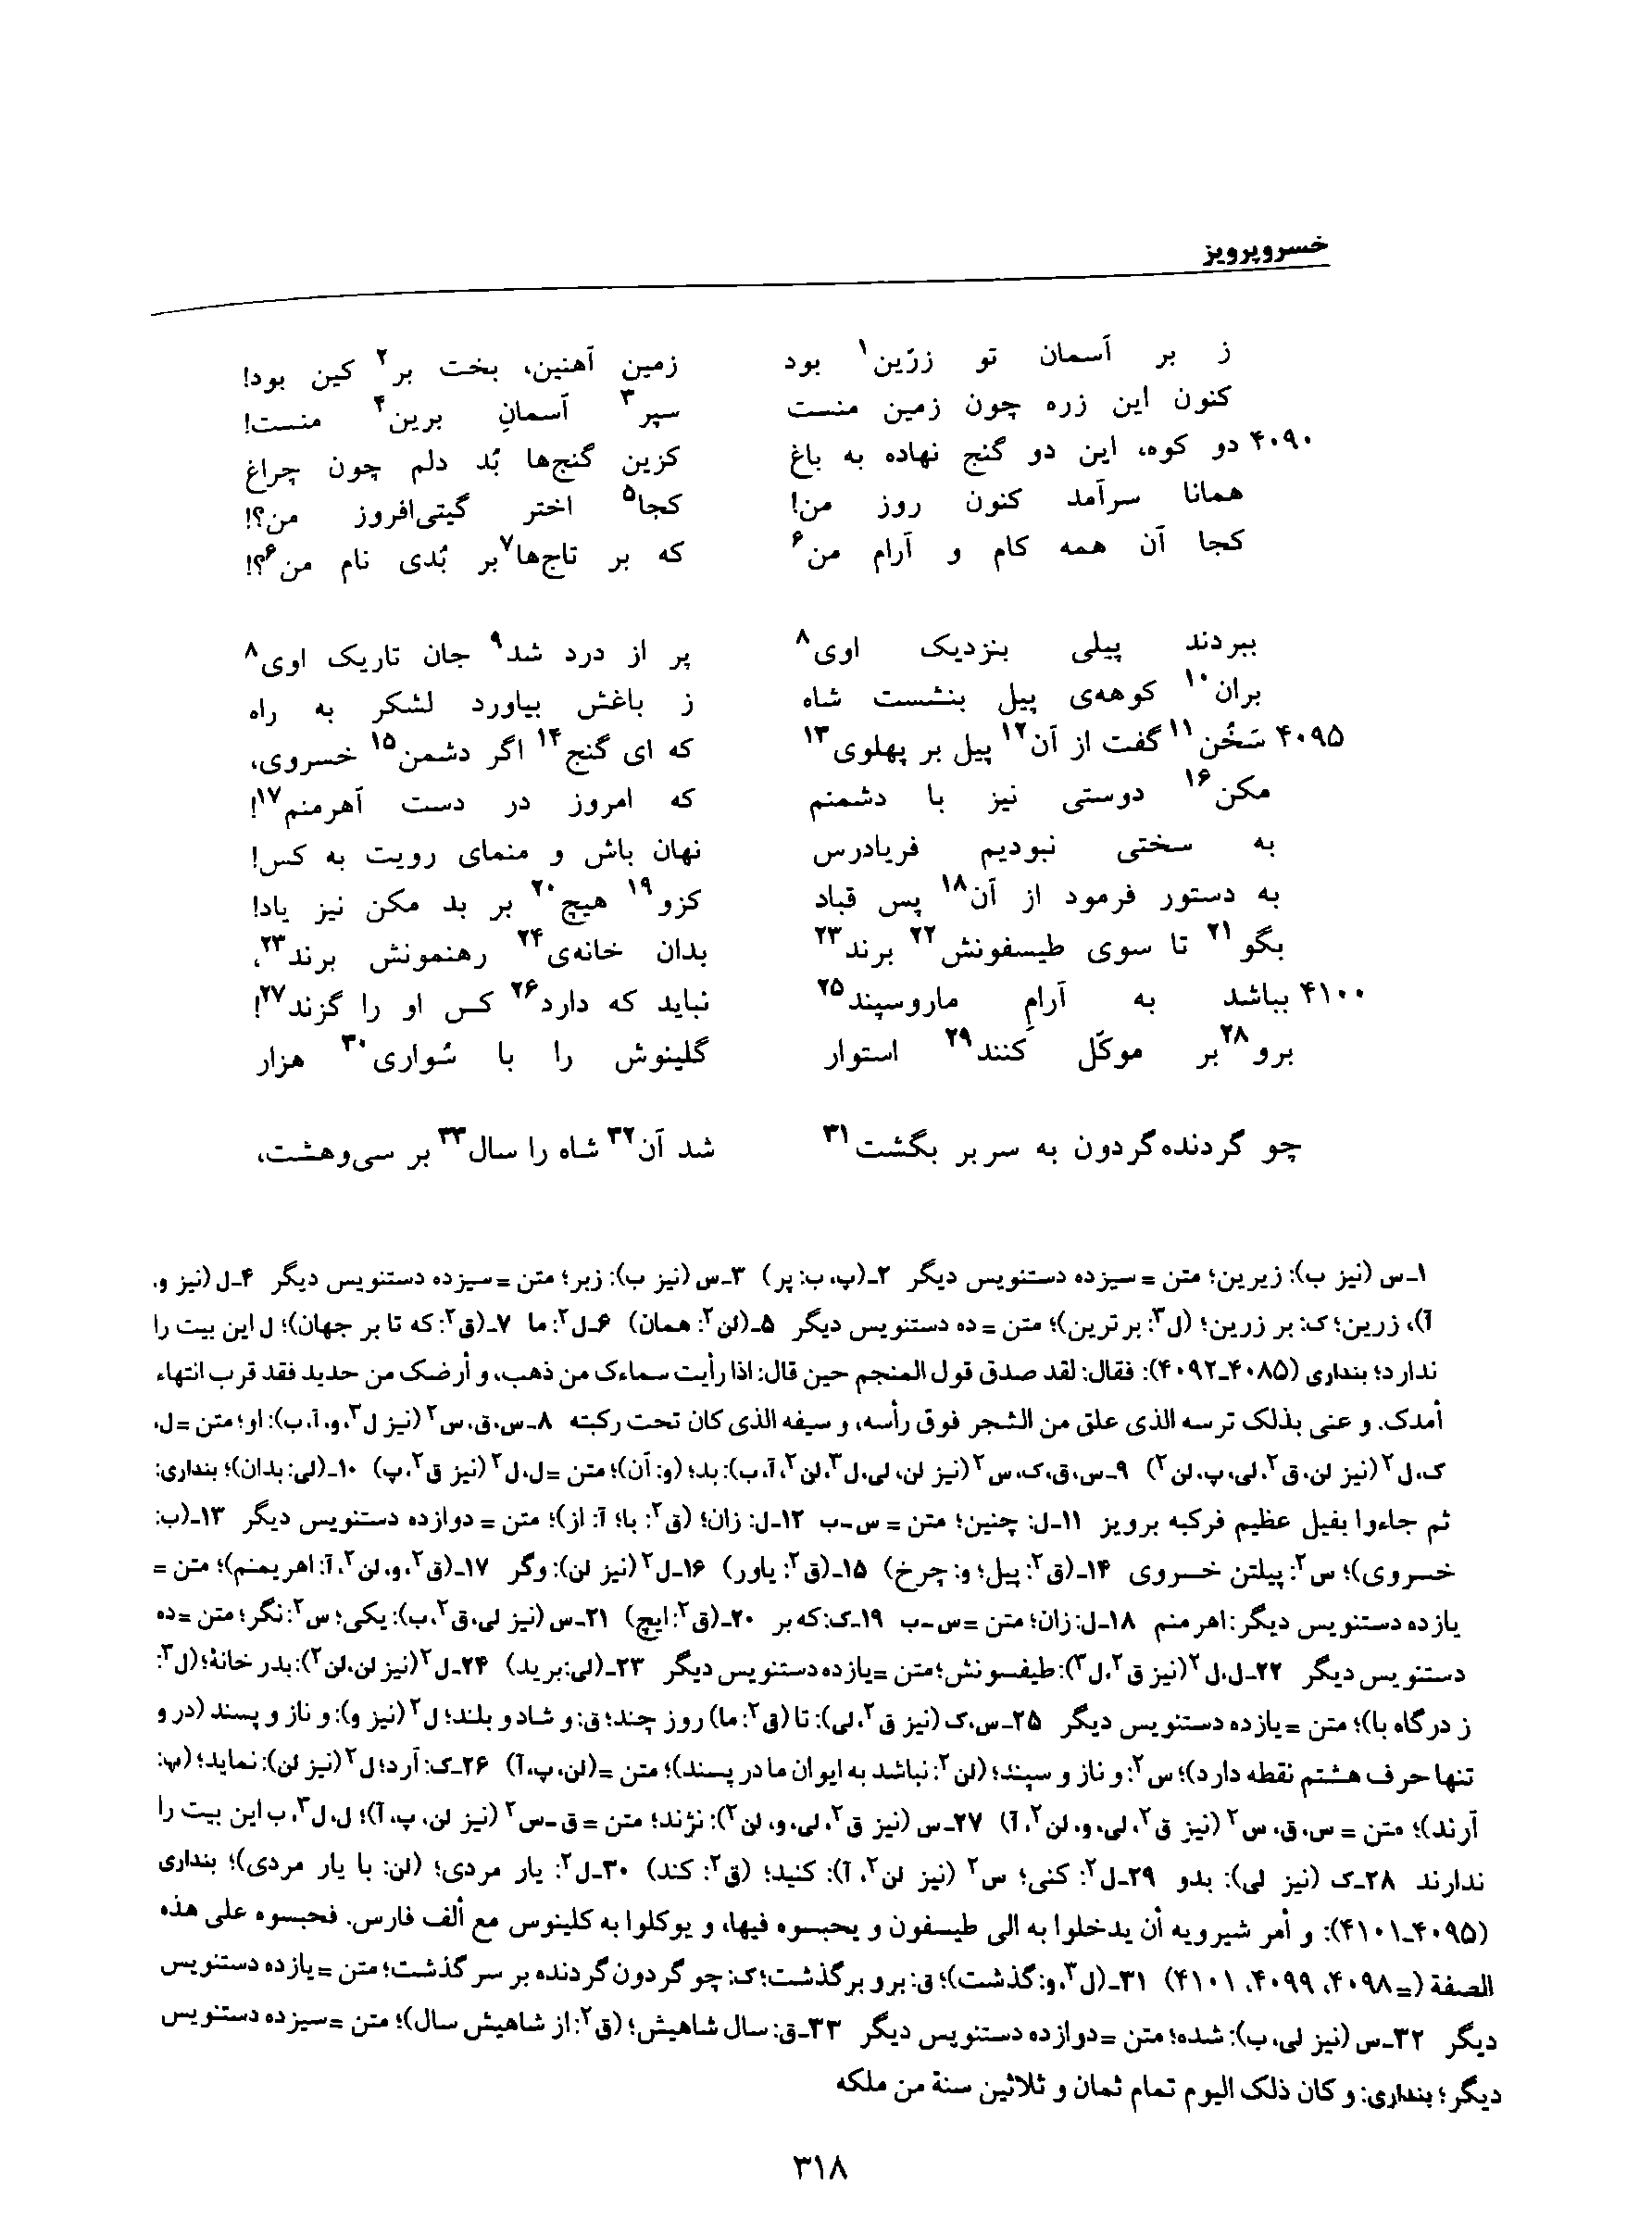 vol. 8, p. 318